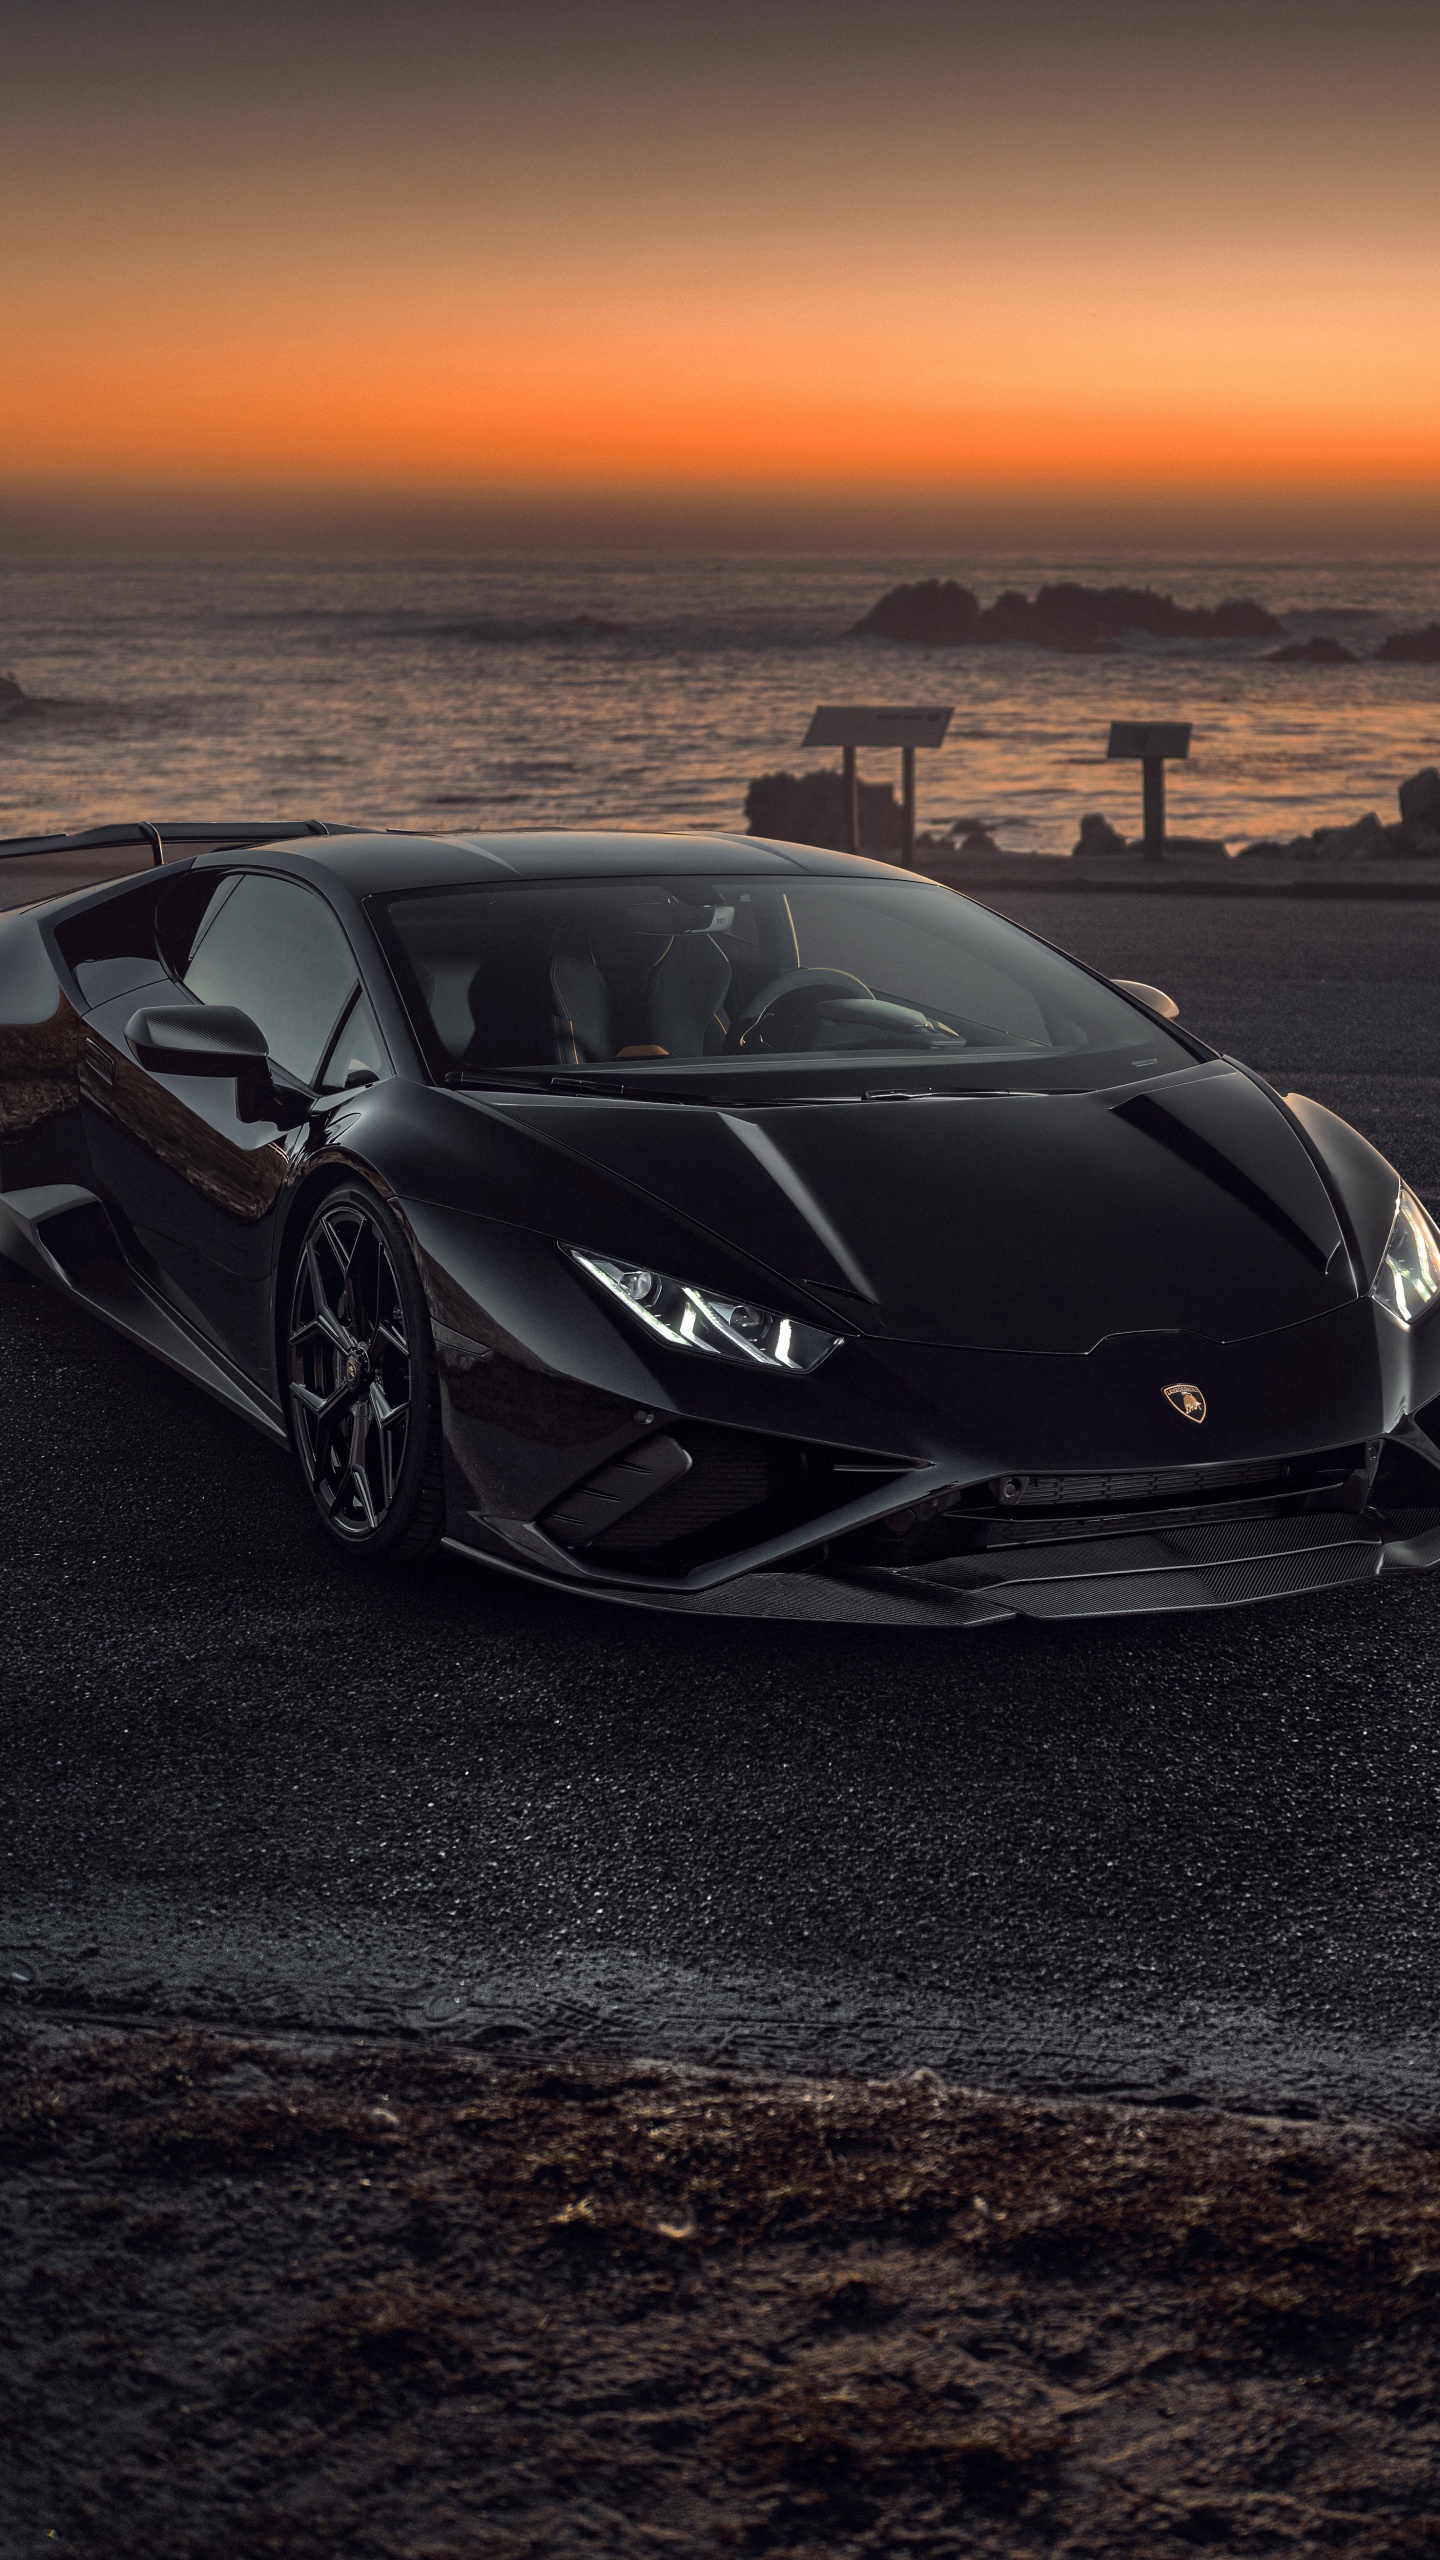 Novitec Lamborghini Huracán EVO RWD Wallpaper 4K, Black cars, Sunset, Cars,  #4900